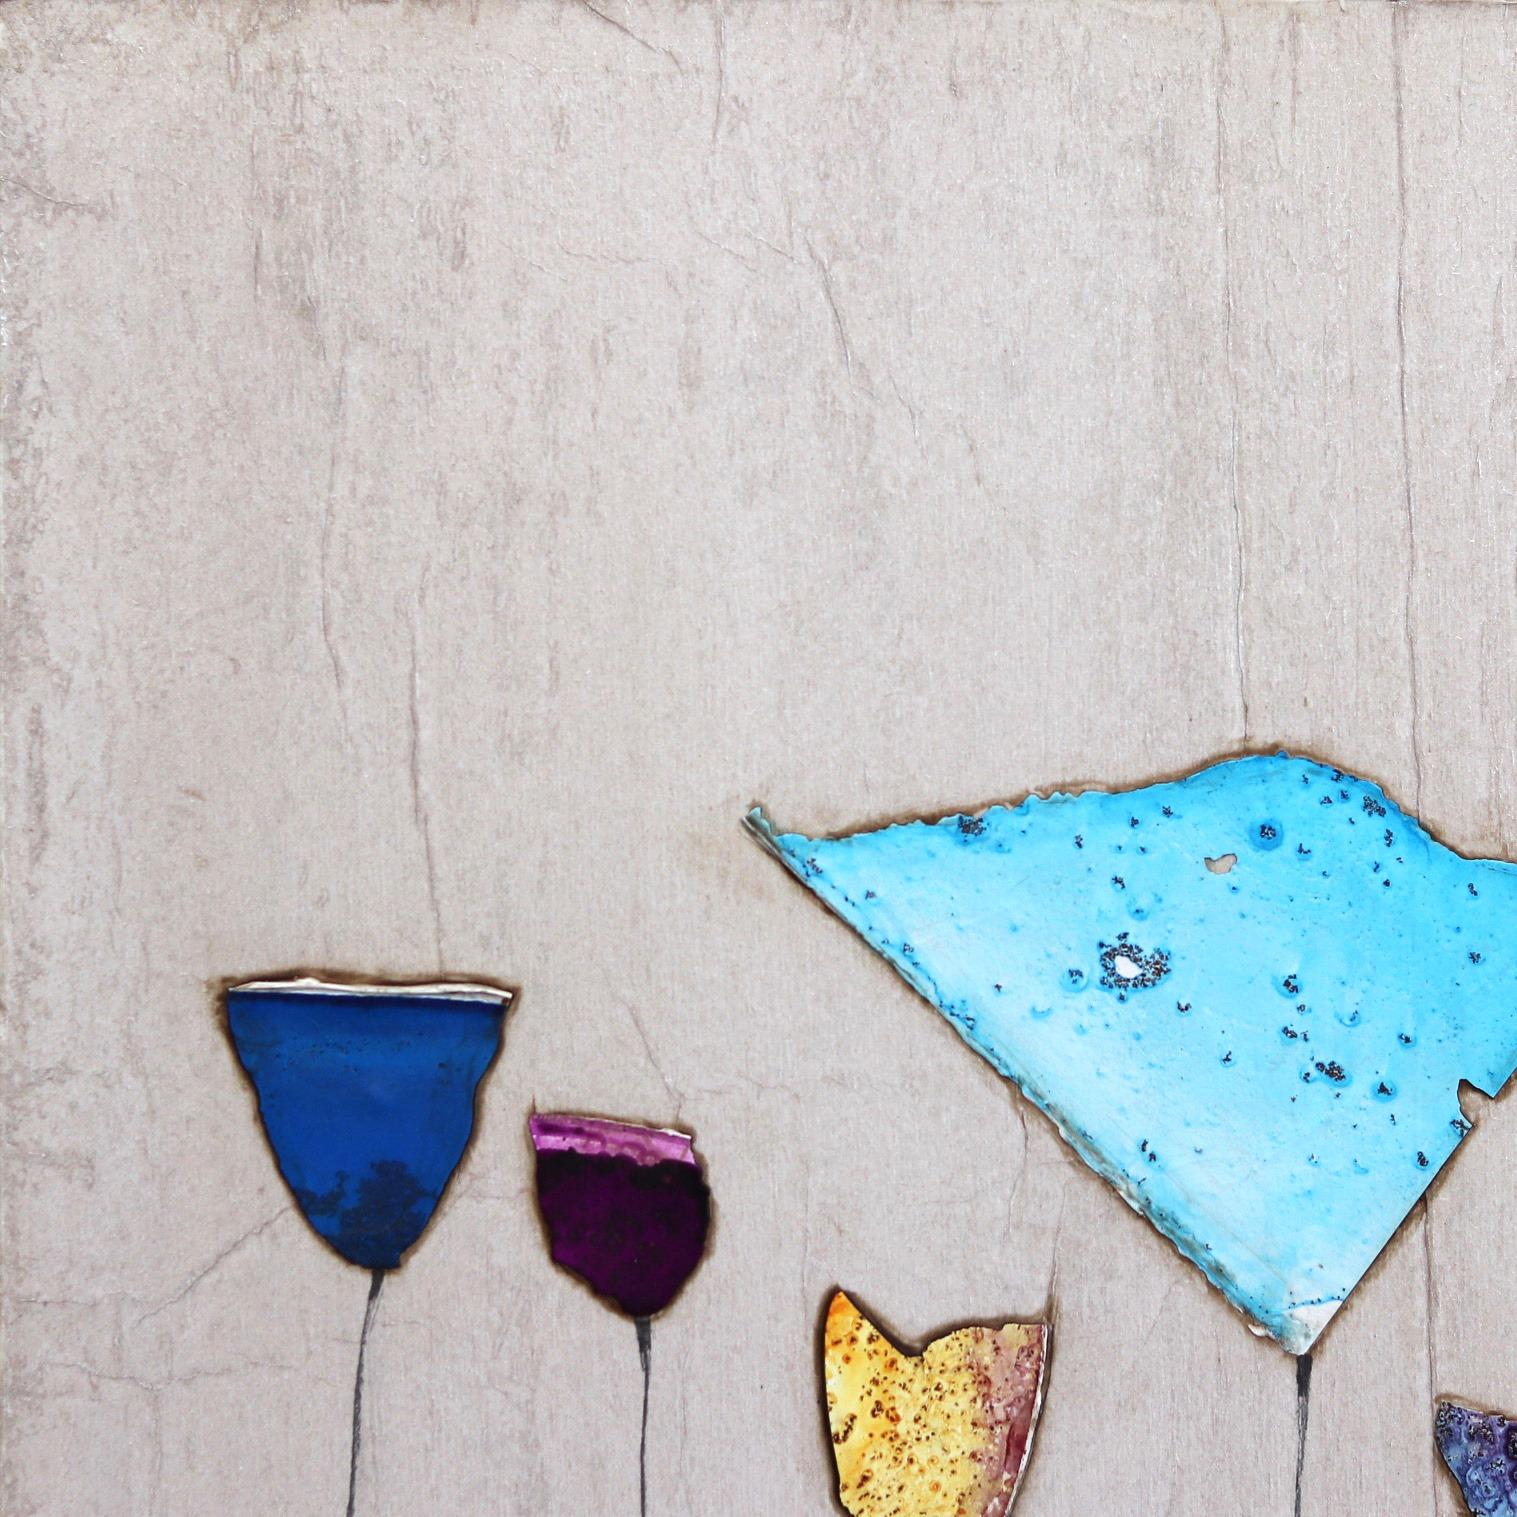 Die organische Ästhetik und die Texturen von Peter Kuttners originellen minimalistischen Boho-Kunstwerken sind das Ergebnis geduldiger Überlagerung und origineller Verwendung von Medien. Durch die Kombination von Farbe und Collage ist Kuttner in der